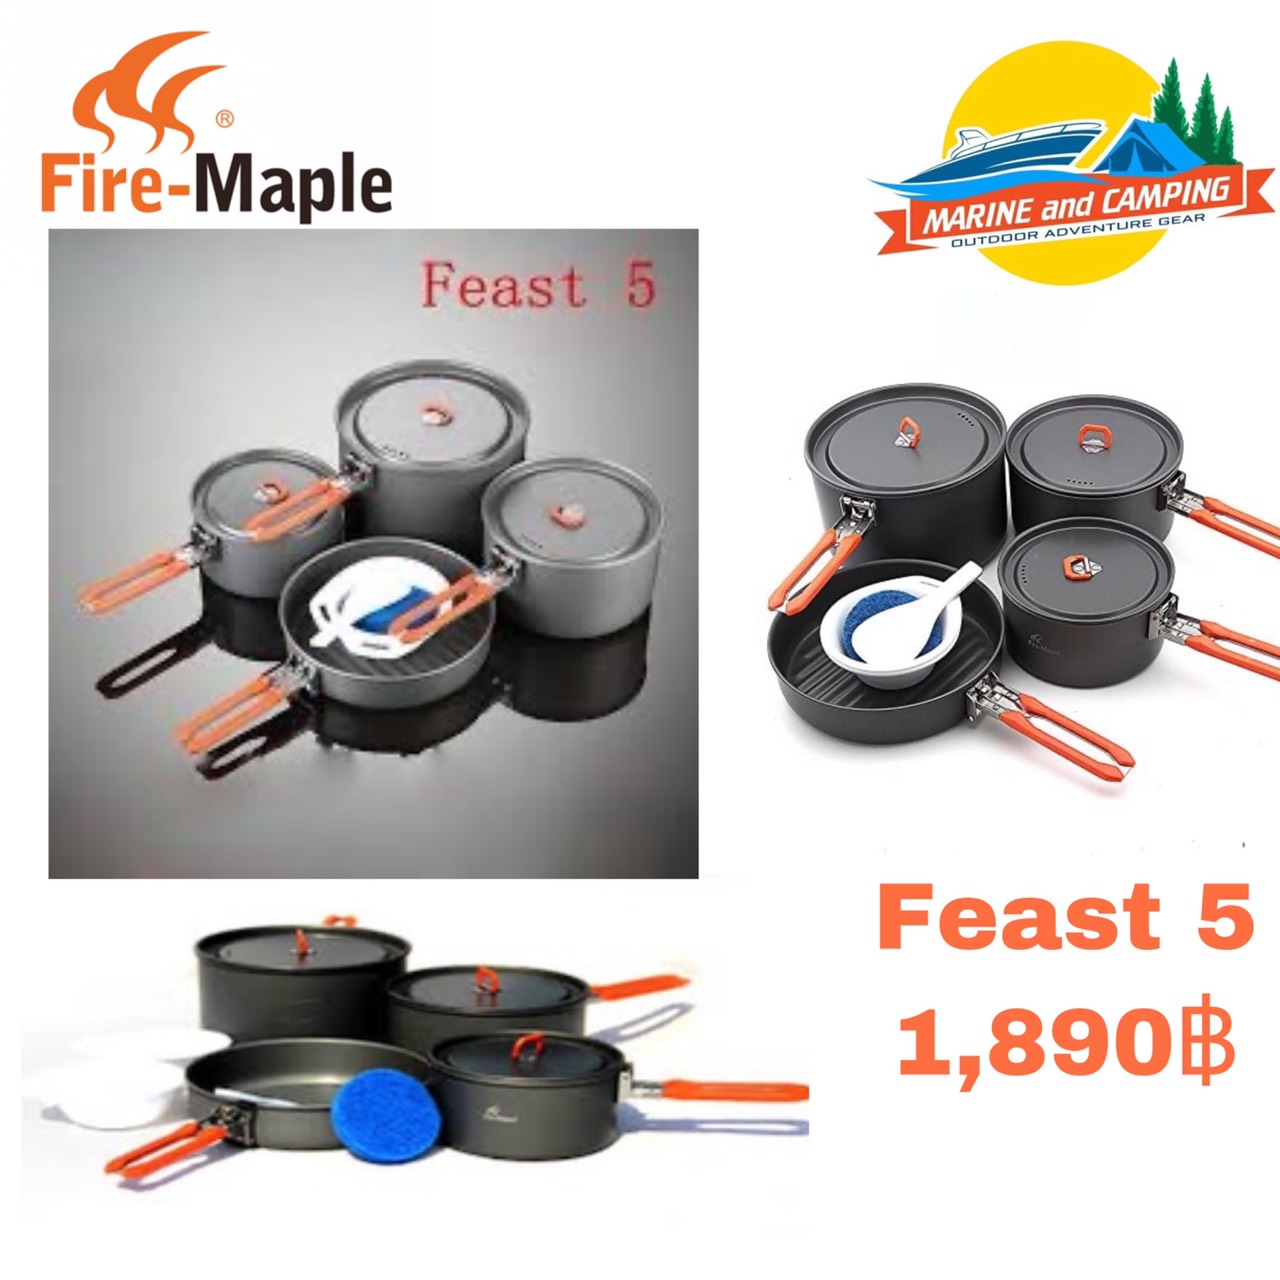 Fire-maple feast 5